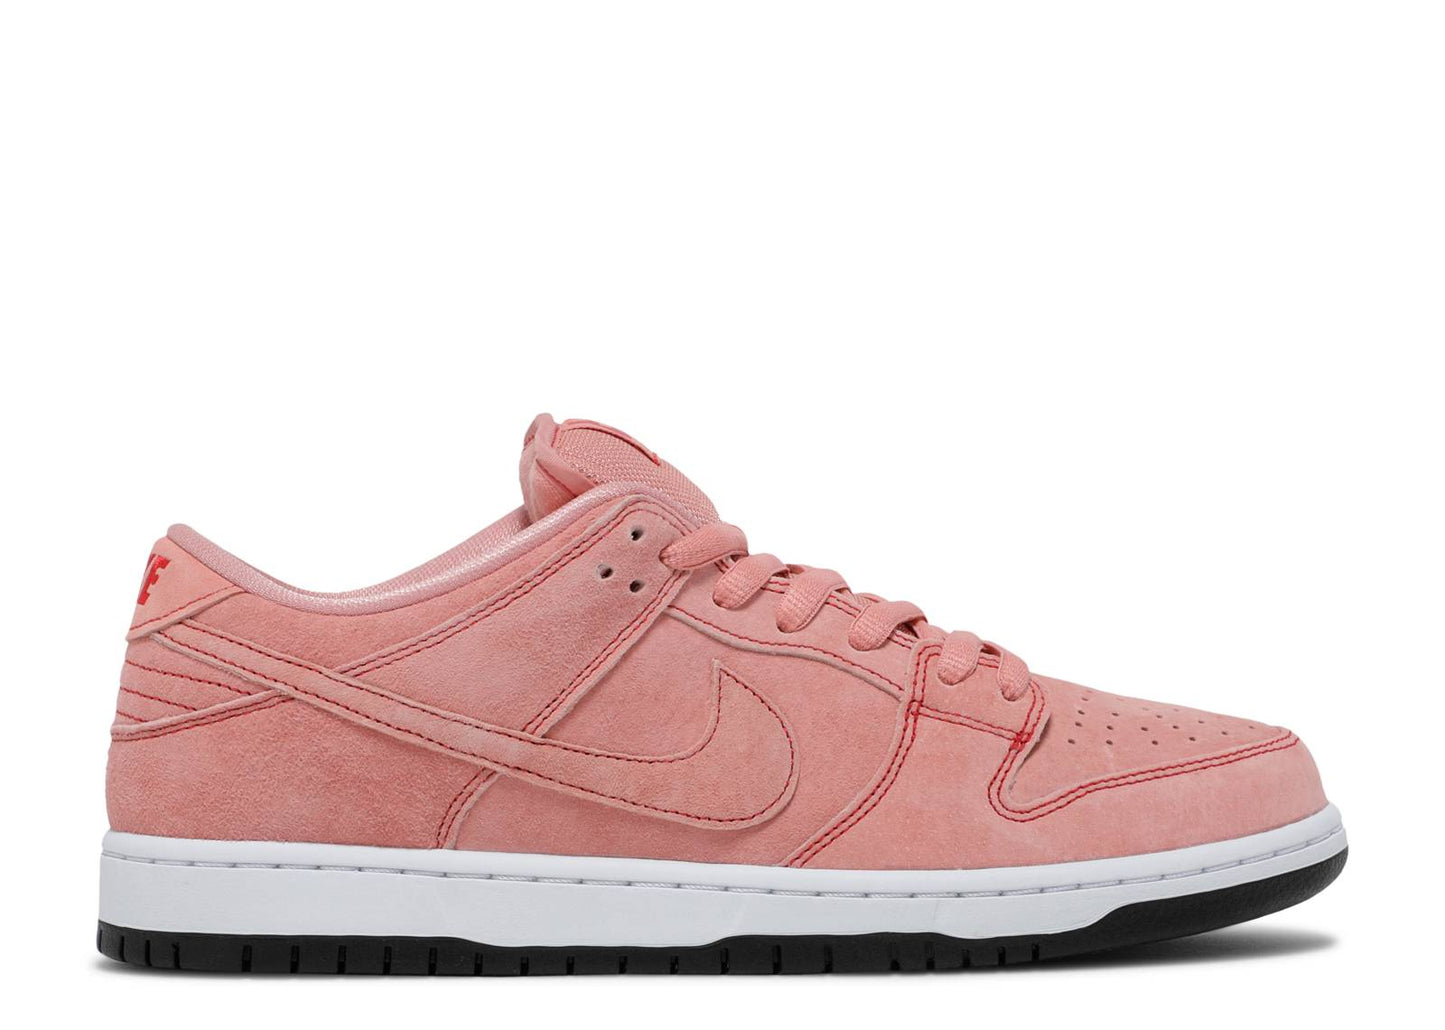 Nike Dunk Low "Pink Pig"